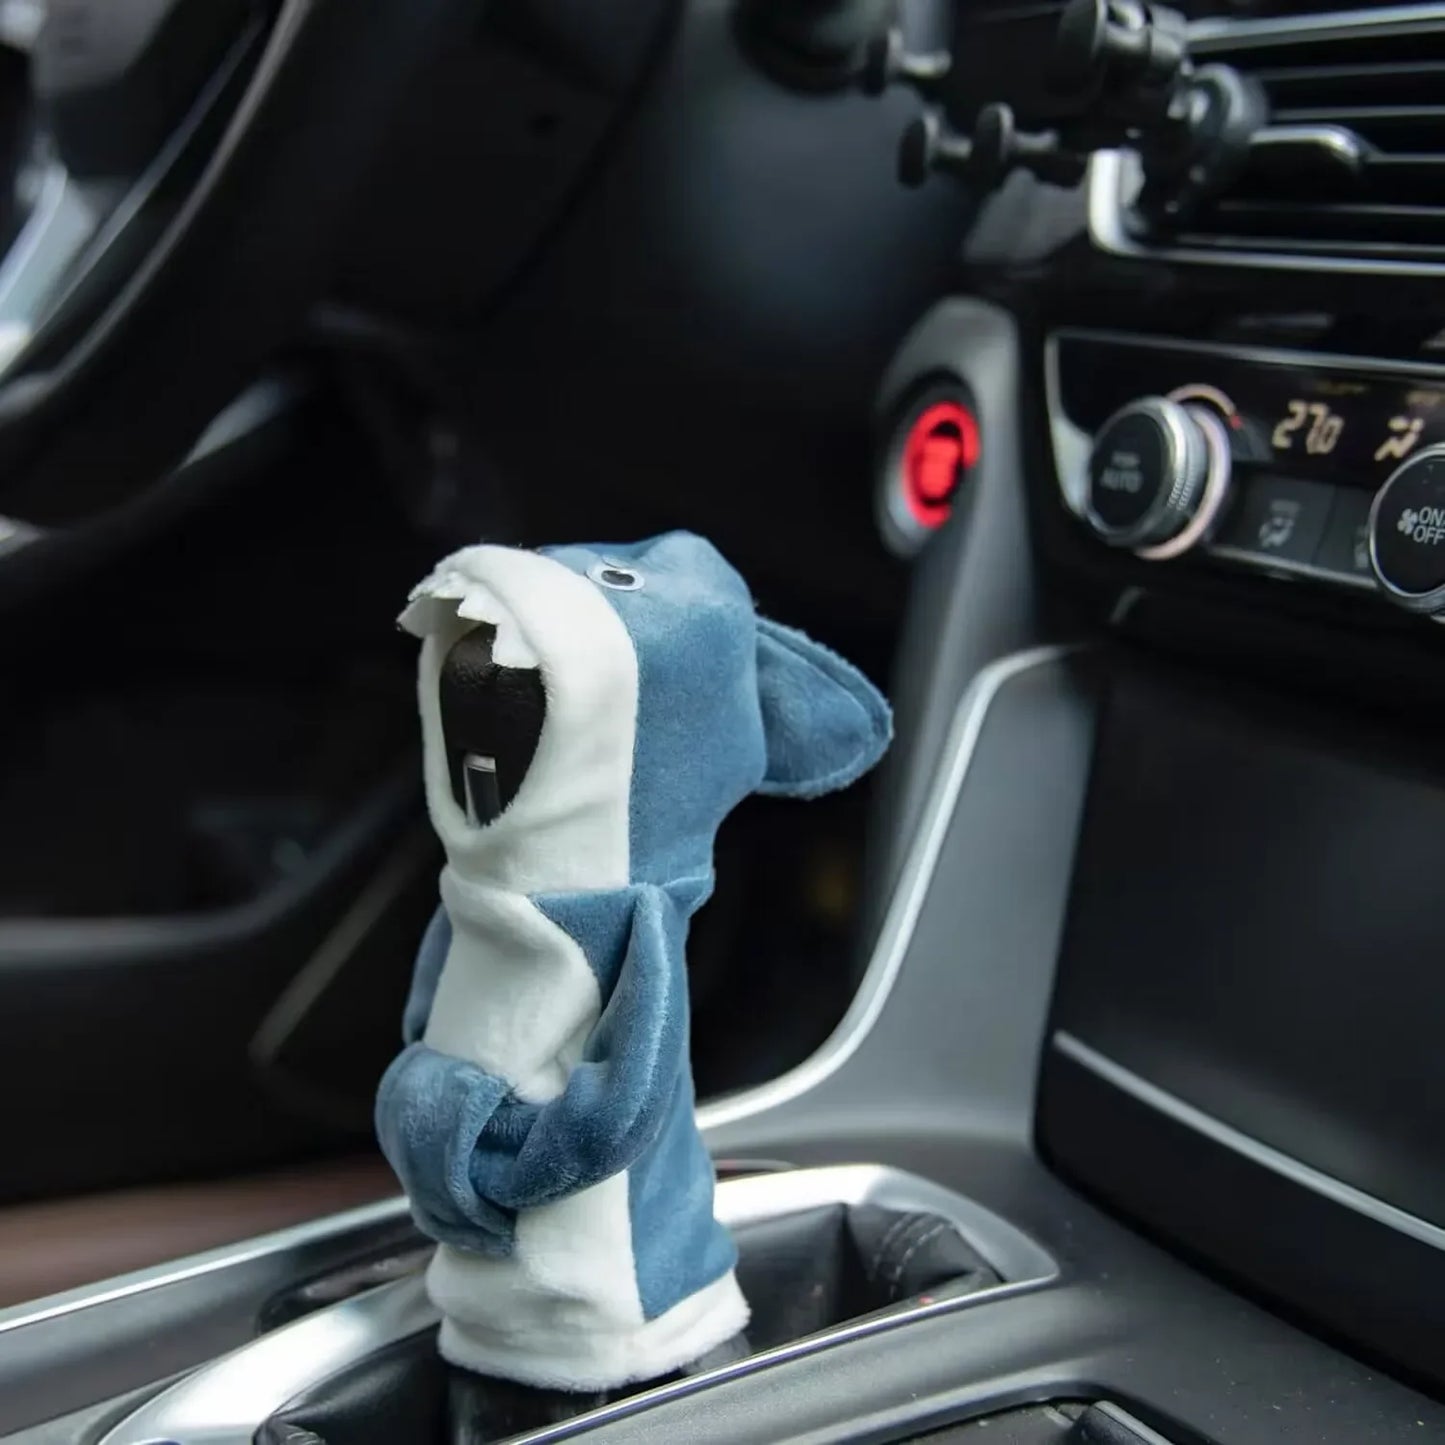 Cute Cartoon Gear Shift Knob Cover for Car Hoodie Decor